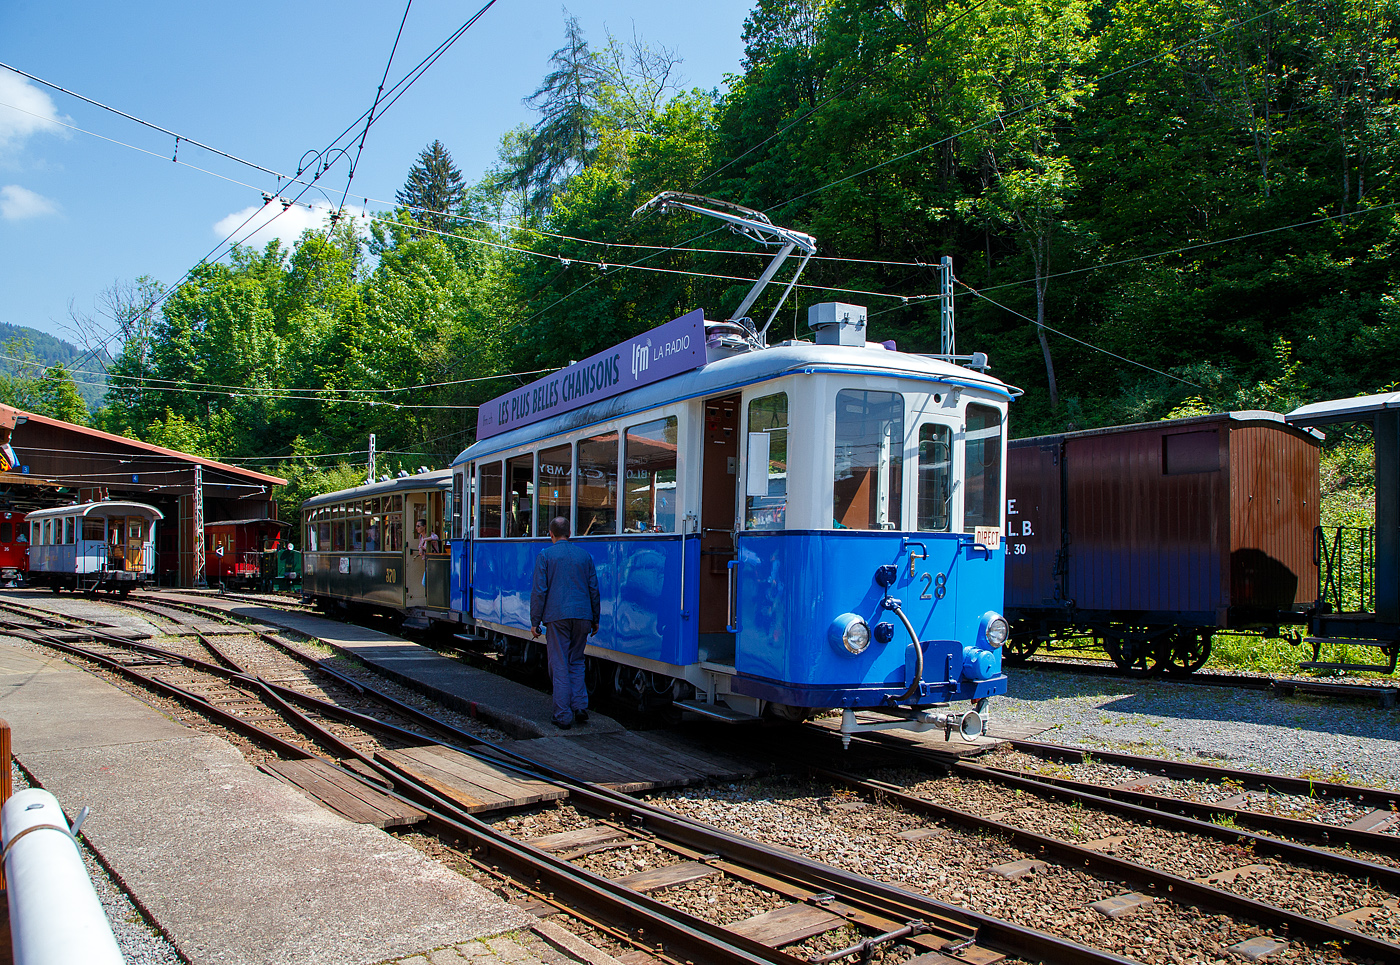 Der Triebwagen Ce 2/3 28 der Museumsbahn Blonay–Chamby, ehemals der TL - Transports publics de la région lausannoise (deutsch Öffentliche Transporte der Region Lausanne), ex Genève Veyrier 23, rangiert am 27.05.2023  im Museums-Areal der Museumsbahn Blonay–Chamby in Chaulin.

Der Triebwagen Ce 2/3 wurde ursprünglich 1913 als Zweiachser für die Genève Veyrier als Nr. 23 von SWS und SAAS gebaut. Bereits 1919 ging er an die TL. Die Werkstätte der TL baute ihn1948 um, die Aufbauten wurden modernisiert und der Wagen bekam eine zusätzliche Mittelachse um die Antriebsachsen beim Durchfahren von Kurven zu führen. Der Verschleiß wurde somit stark reduziert und der Komfort stark verbessert. 1963 wurde die Jorat-Linie stillgelegt und der Triebwagen, sowie ein weiterer, gingen an die BVB. Der ex TL Ce 2/3 – 28 wurde 1976 an die Blonay-Chamby verkauft und ist eines der letzten Überbleibsel der Lausanner Straßenbahnen.

TECHNISCHE DATEN des Ce 2/3 – 28
Spurweite: 1.000 mm
Achsformel: A 1 A
Länge über Puffer: 11.030 mm
Achsabstand: 2 x 2.100 mm (4.200 mm)
Breite: 2.150 mm
Höhe: 3.350 mm
Dienstgewicht: 15.8 t
Treibraddurchmesser: 880 mm (das Laufrad ist wesentlich kleiner)
Höchstgeschwindigkeit.: 55 km/h
Leistung: 2 x 88 kW = 176 kW
Getriebeübersetzung: 1:5,93
Spannung: 900 V DC
Sitzplätze: 24 (3. Klasse)
Stehplätze: 46
